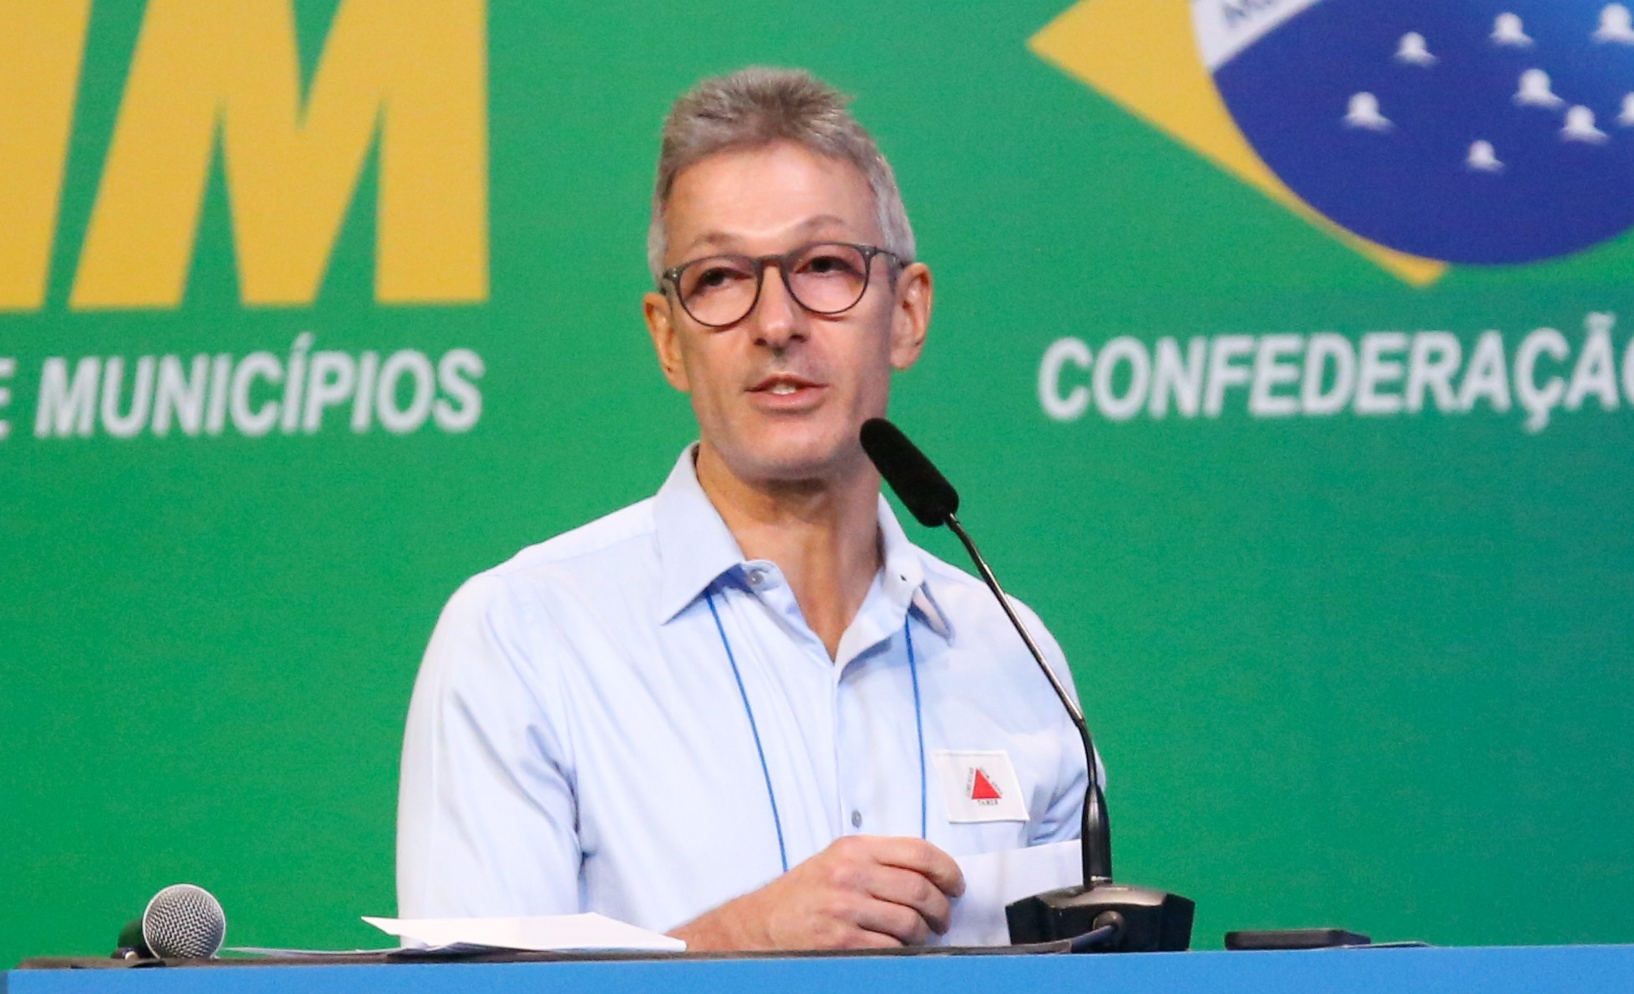 Governador de Minas Gerais defende protagonismo do Sul e Sudeste contra o Nordeste e é criticado por fala considerada separatista